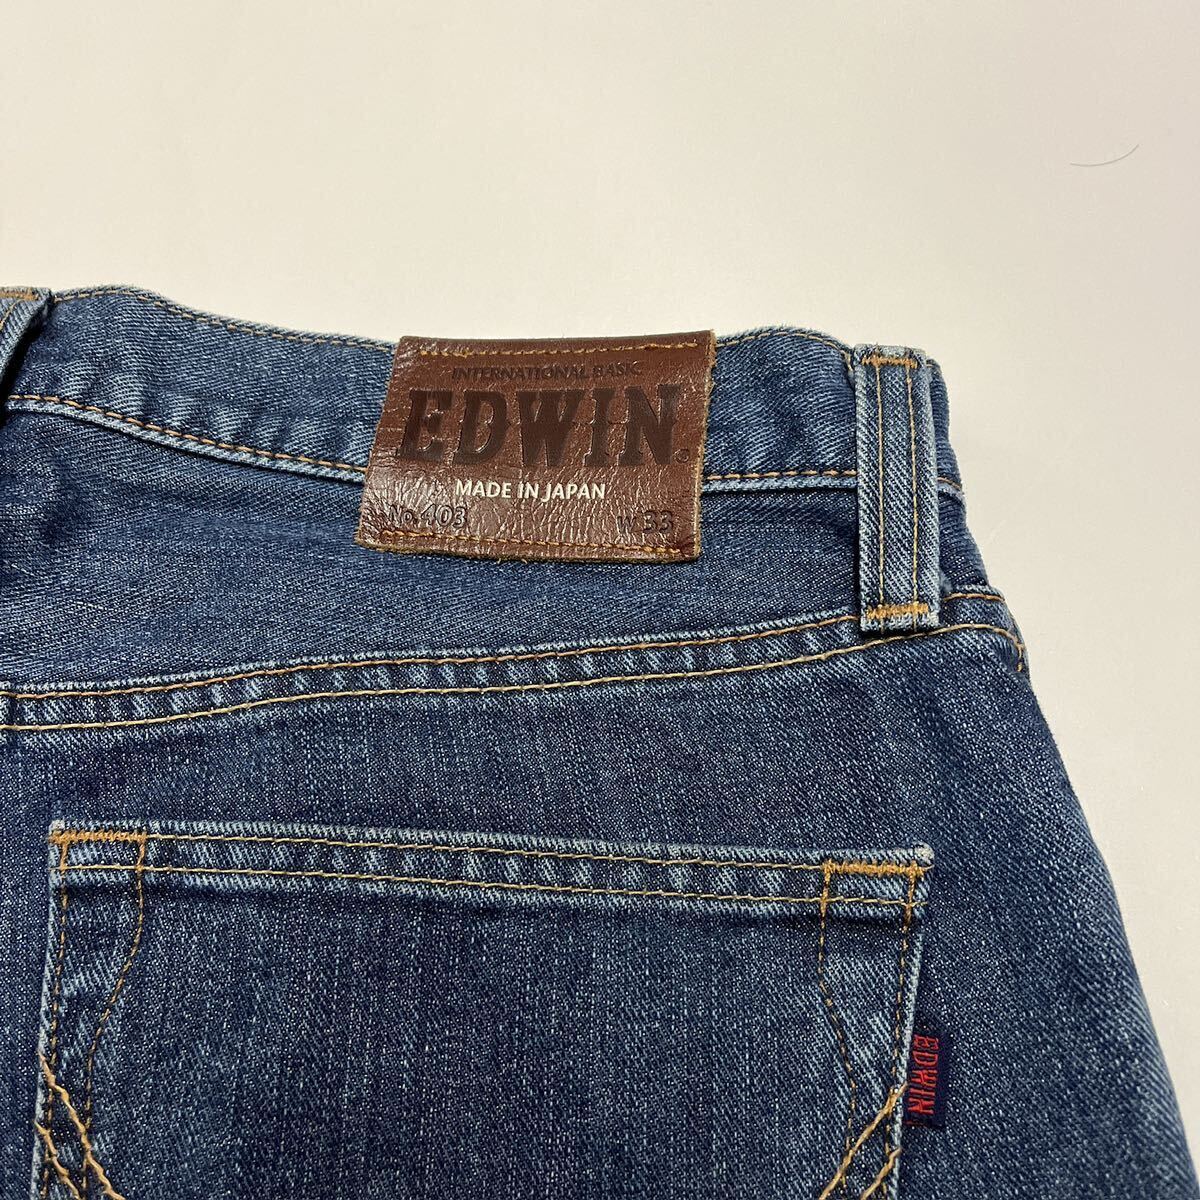 EDWIN エドウィン 403 インターナショナルベーシック ストレートジーンズ デニムパンツ W33 日本製_画像7